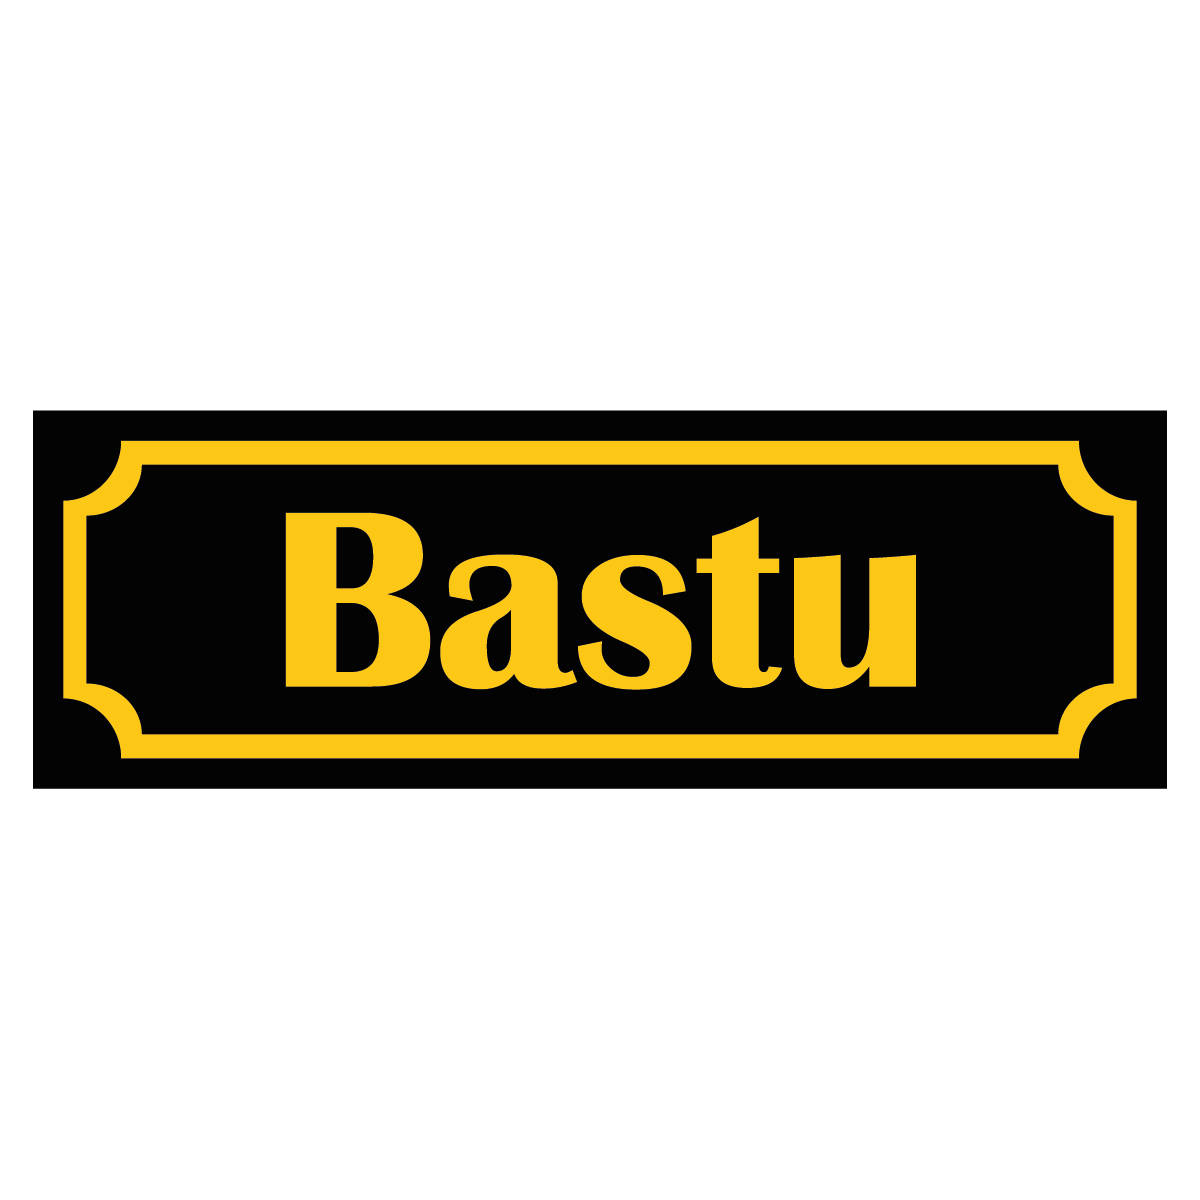 Bastu - Skylt - 150x50mm - Svart - Gul